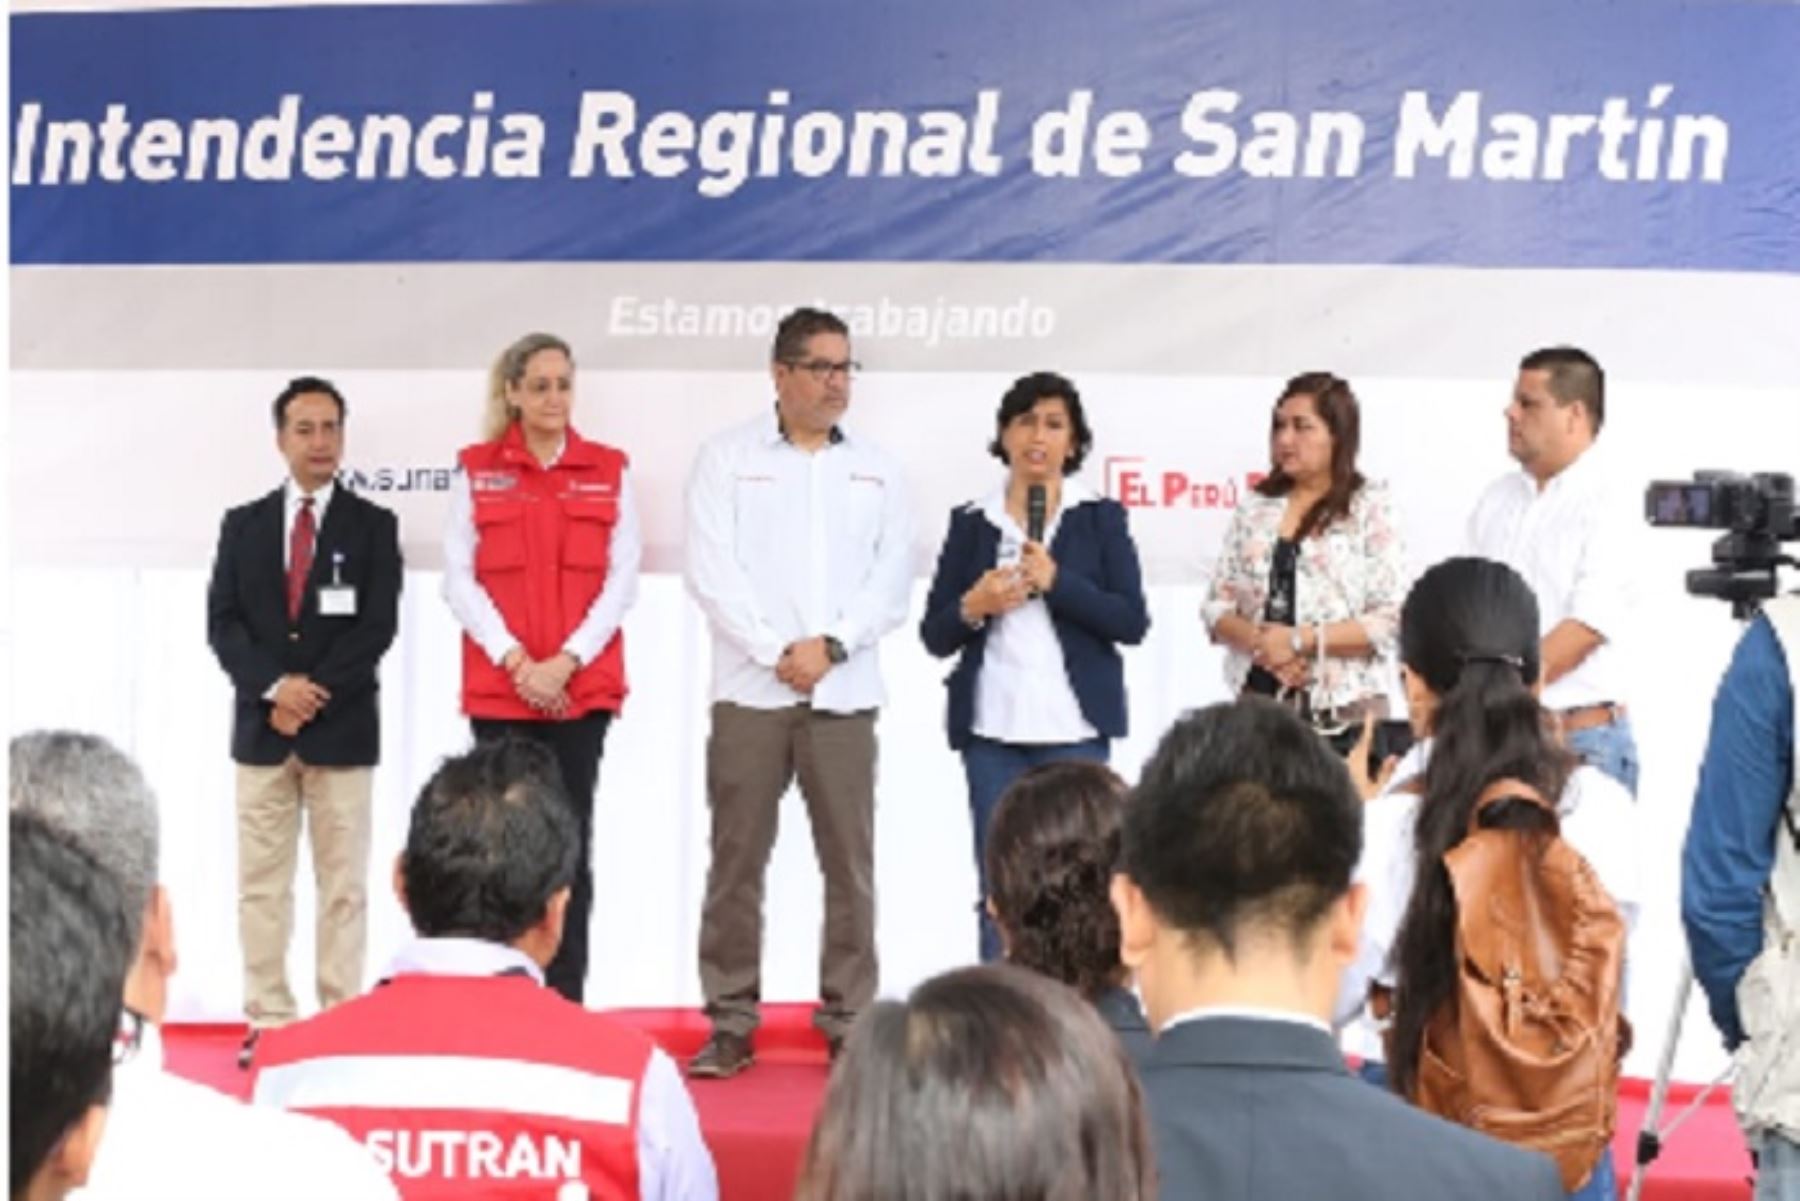 Con la finalidad de intensificar la fiscalización del trabajo en el país, la ministra de Trabajo y Promoción del Empleo (MTPE), Sylvia Cáceres Pizarro, inauguró la décimo séptima Intendencia Regional de la Superintendencia Nacional de Fiscalización Laboral (Sunafil) en la ciudad de Tarapoto, región San Martín.